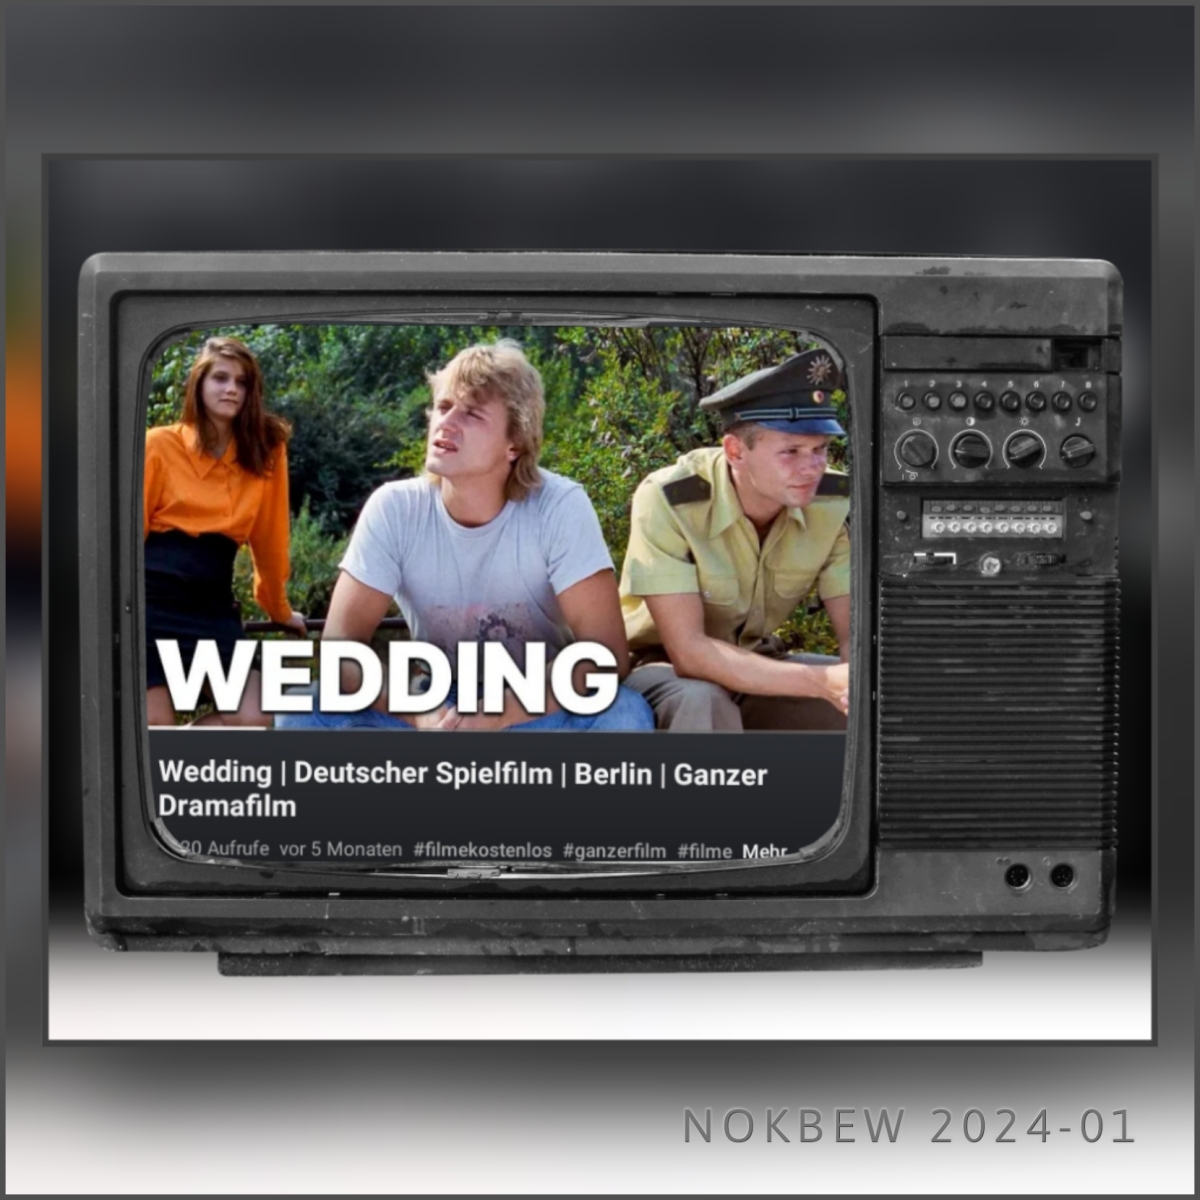 Wedding | Deutscher Spielfilm | Berlin | Ganzer Dramafilm